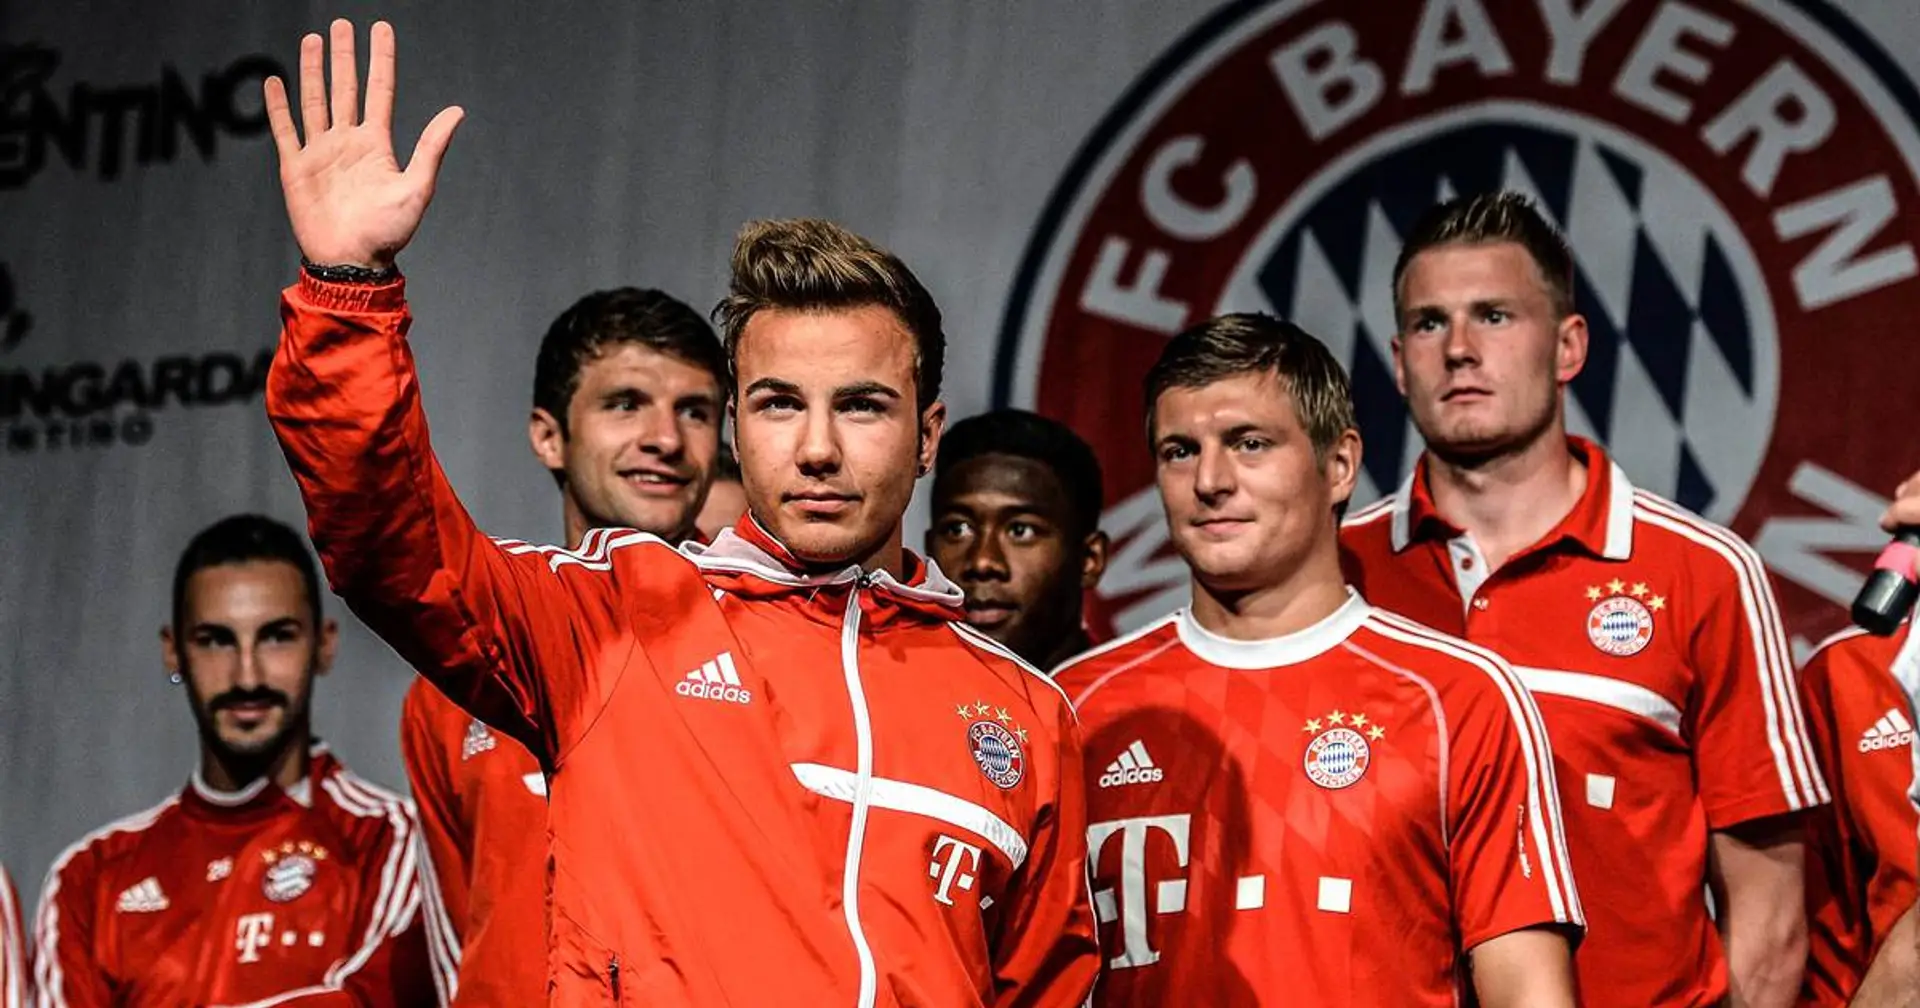 "Zu dieser Zeit war es sehr komisch": Mario Götze spricht erneut über seinen Bayern-Wechsel 2013